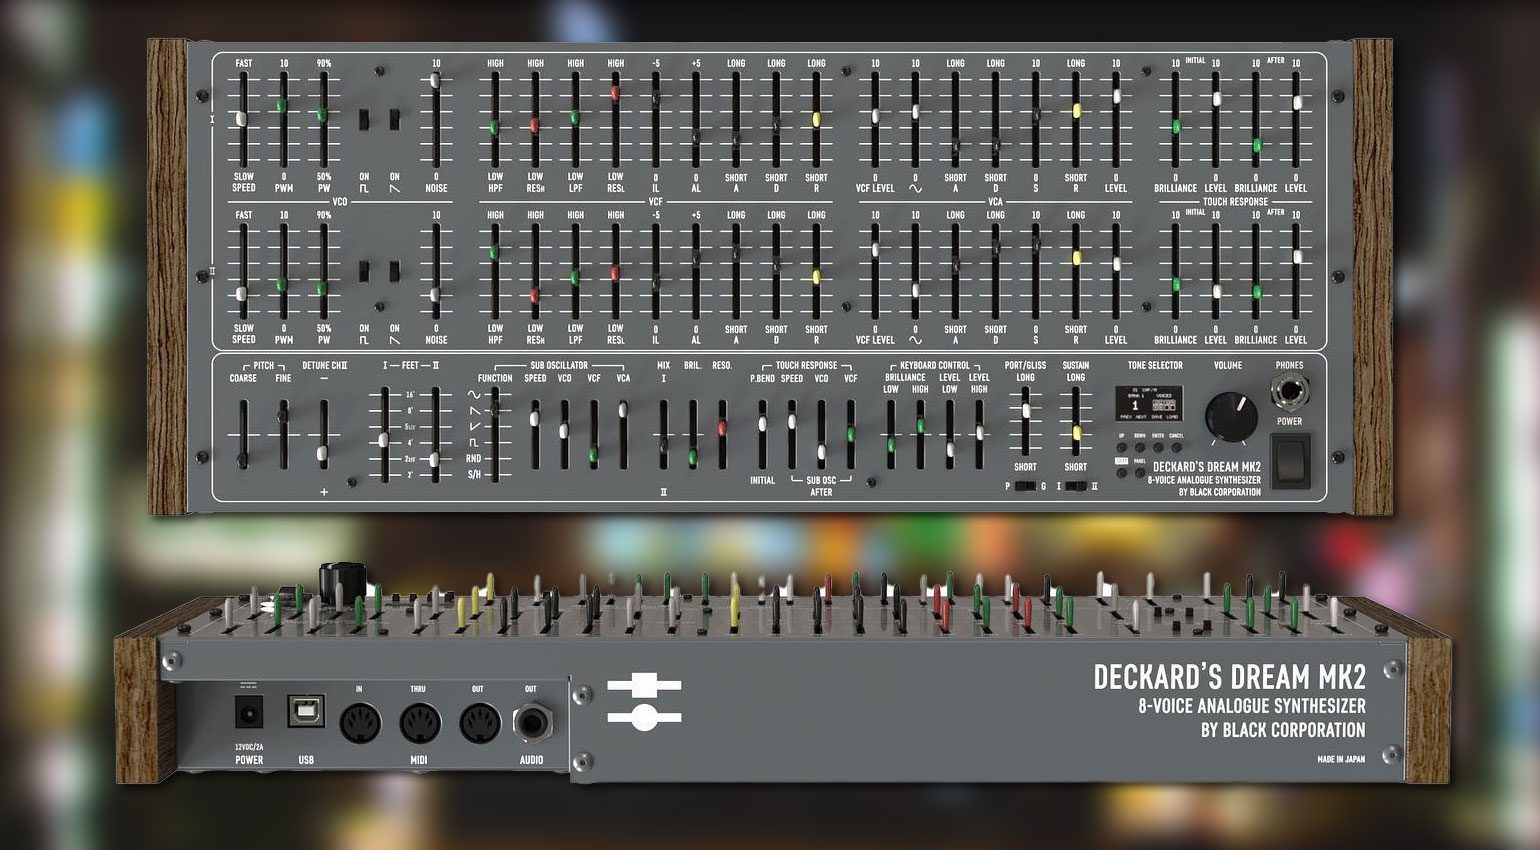 Le rêve de Black Corporation Deckard : une conception sonore épique